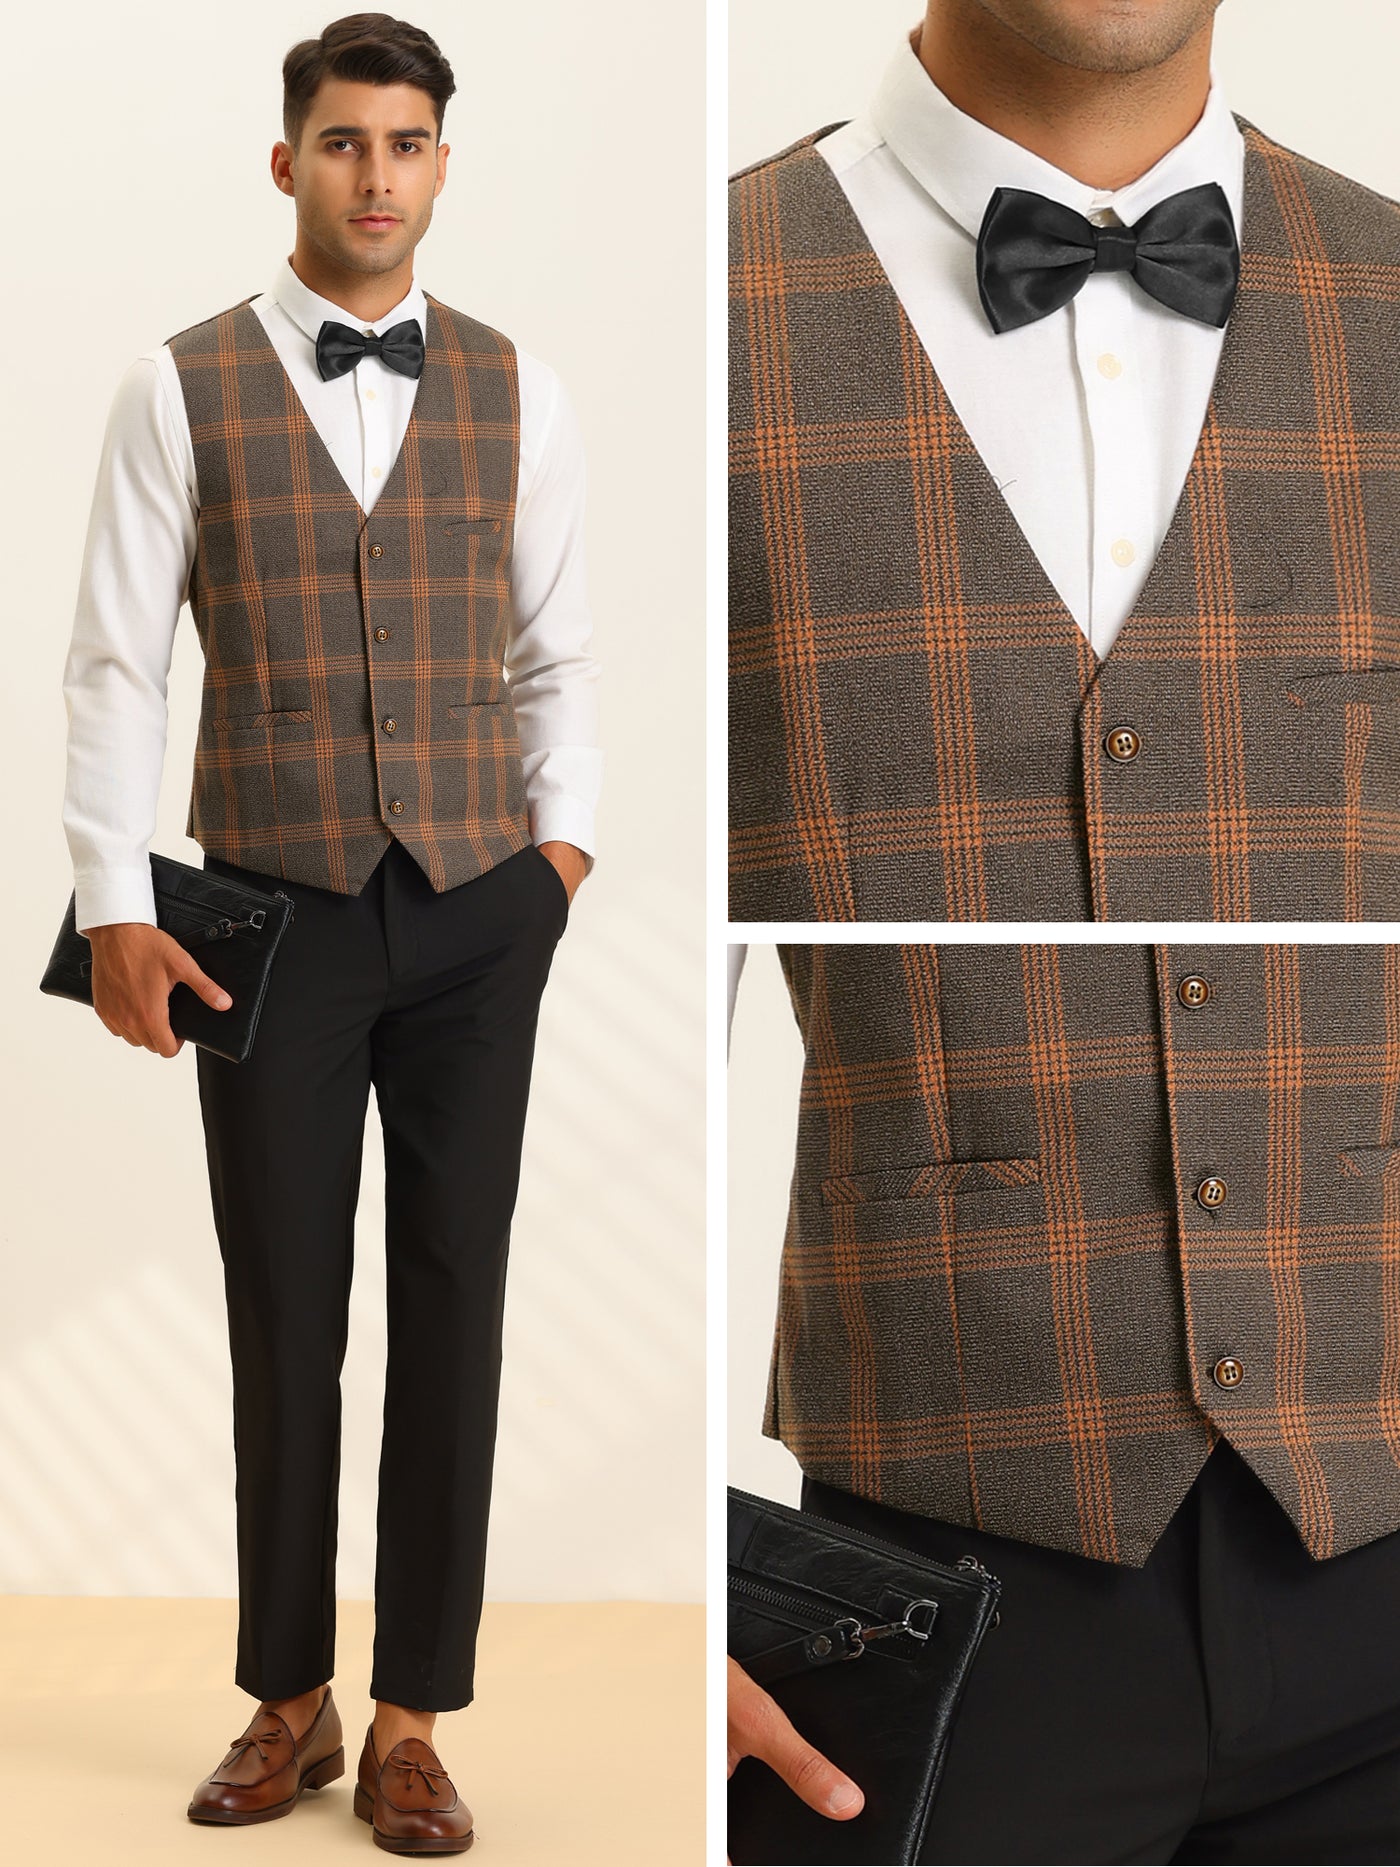 Bublédon Men's Plaid Suit Vest Slim Fit Formal Checked Dress Waistcoat with Bow-Tie